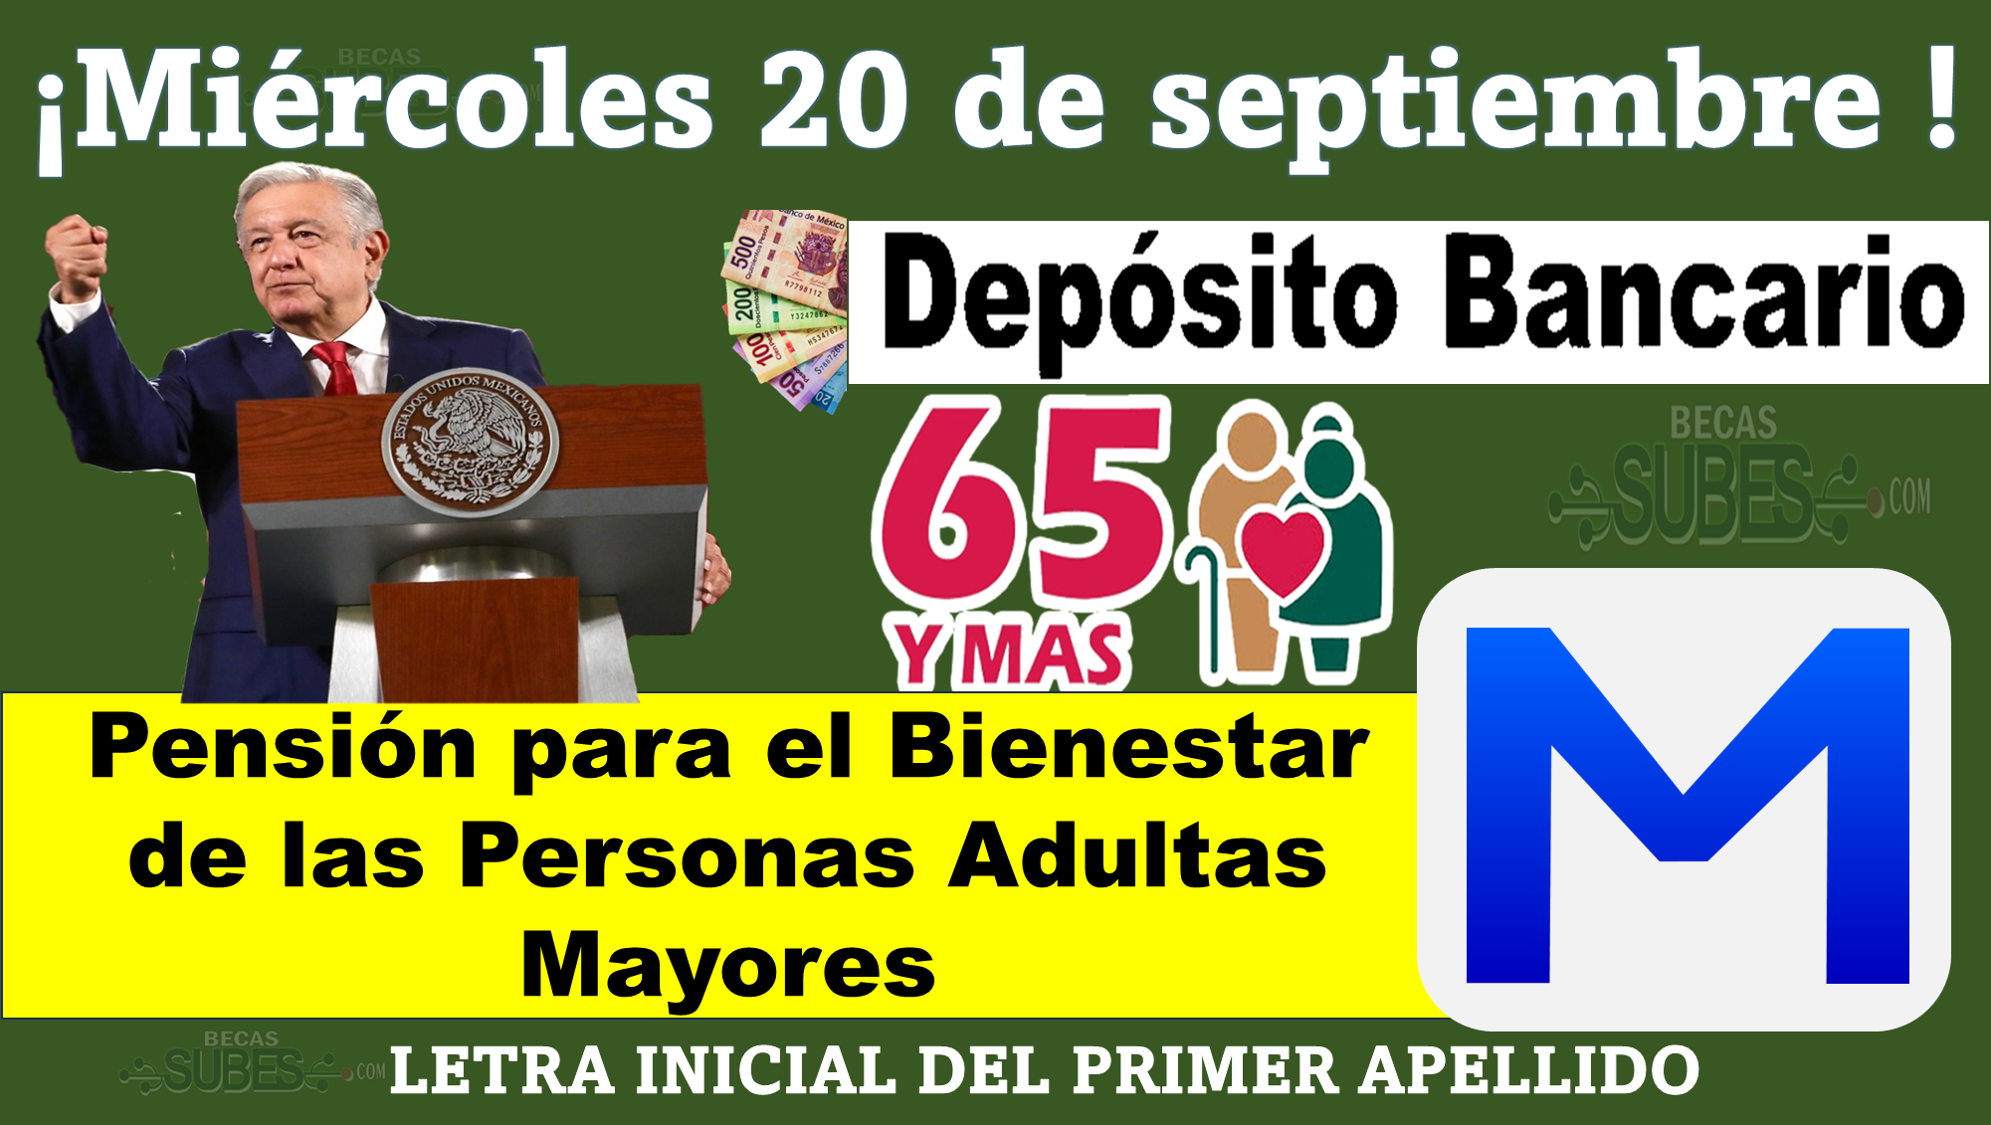 El miércoles 20 de septiembre se realizará el Depósito Bancario de Pensión para el Bienestar de las Personas Adultas Mayores para los apellidos que inicien con la letra M.